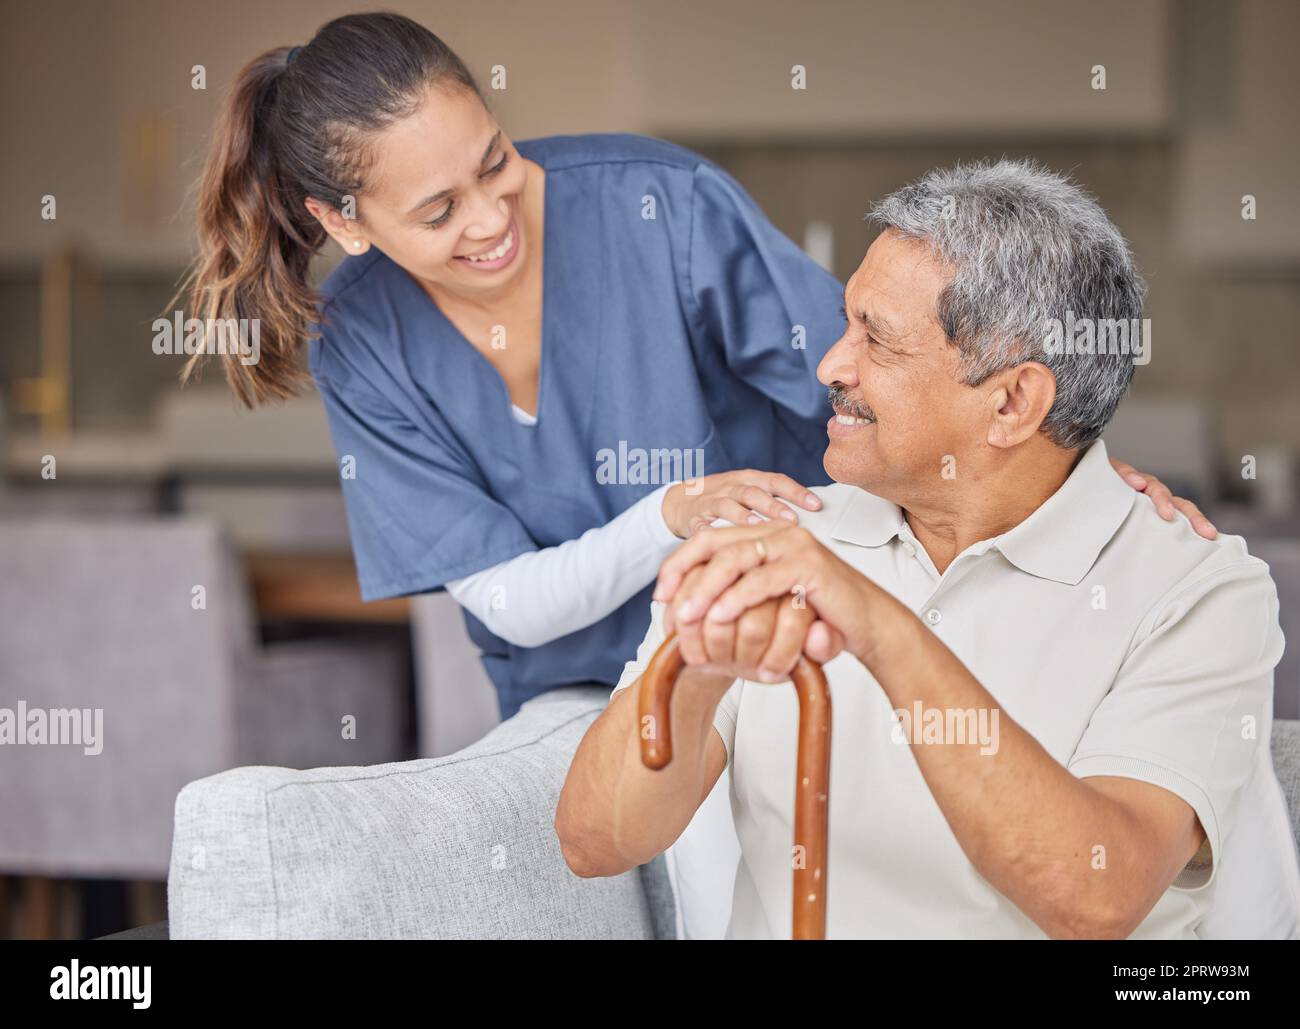 Soins de santé, gentillesse et soutien avec l'infirmière aidant les patients âgés dans la vie assistée à domicile, sourire et contenu. Un homme âgé heureux se liant à un soignant amical, parlant et riant ensemble sur le canapé Banque D'Images